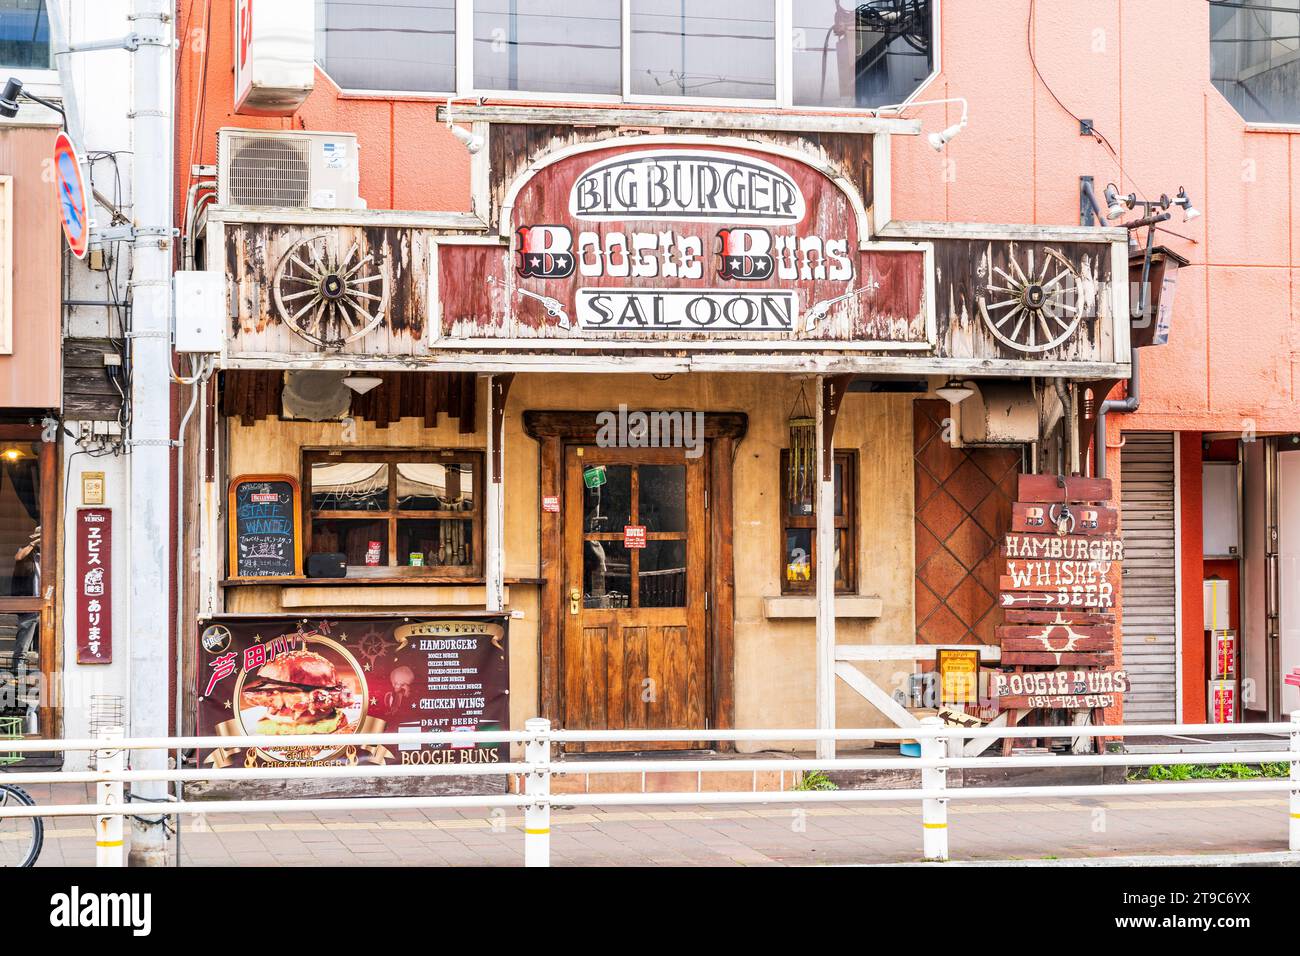 Die japanische Burgerbar Boogie Buns Saloon ist ein amerikanischer Wildwest-Saloon an einer Hauptstraße in Fukuyama. Außenbereich mit Eingang und Menüs. Stockfoto